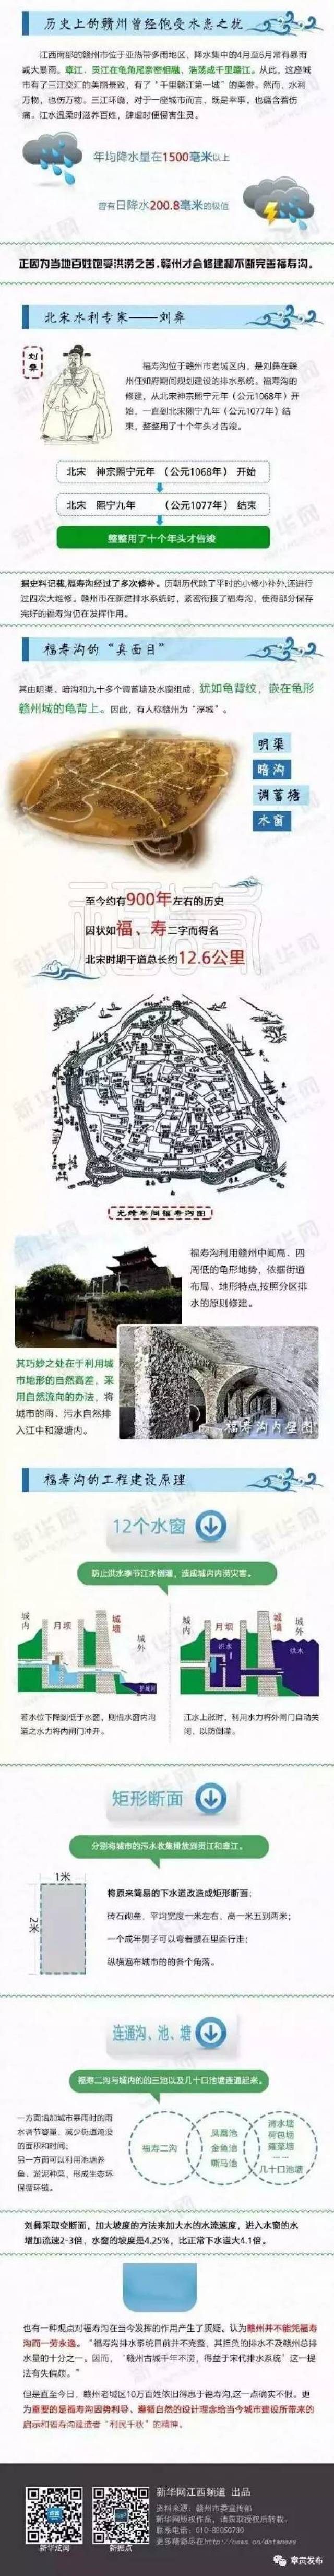 寿县的名胜古迹介绍图片